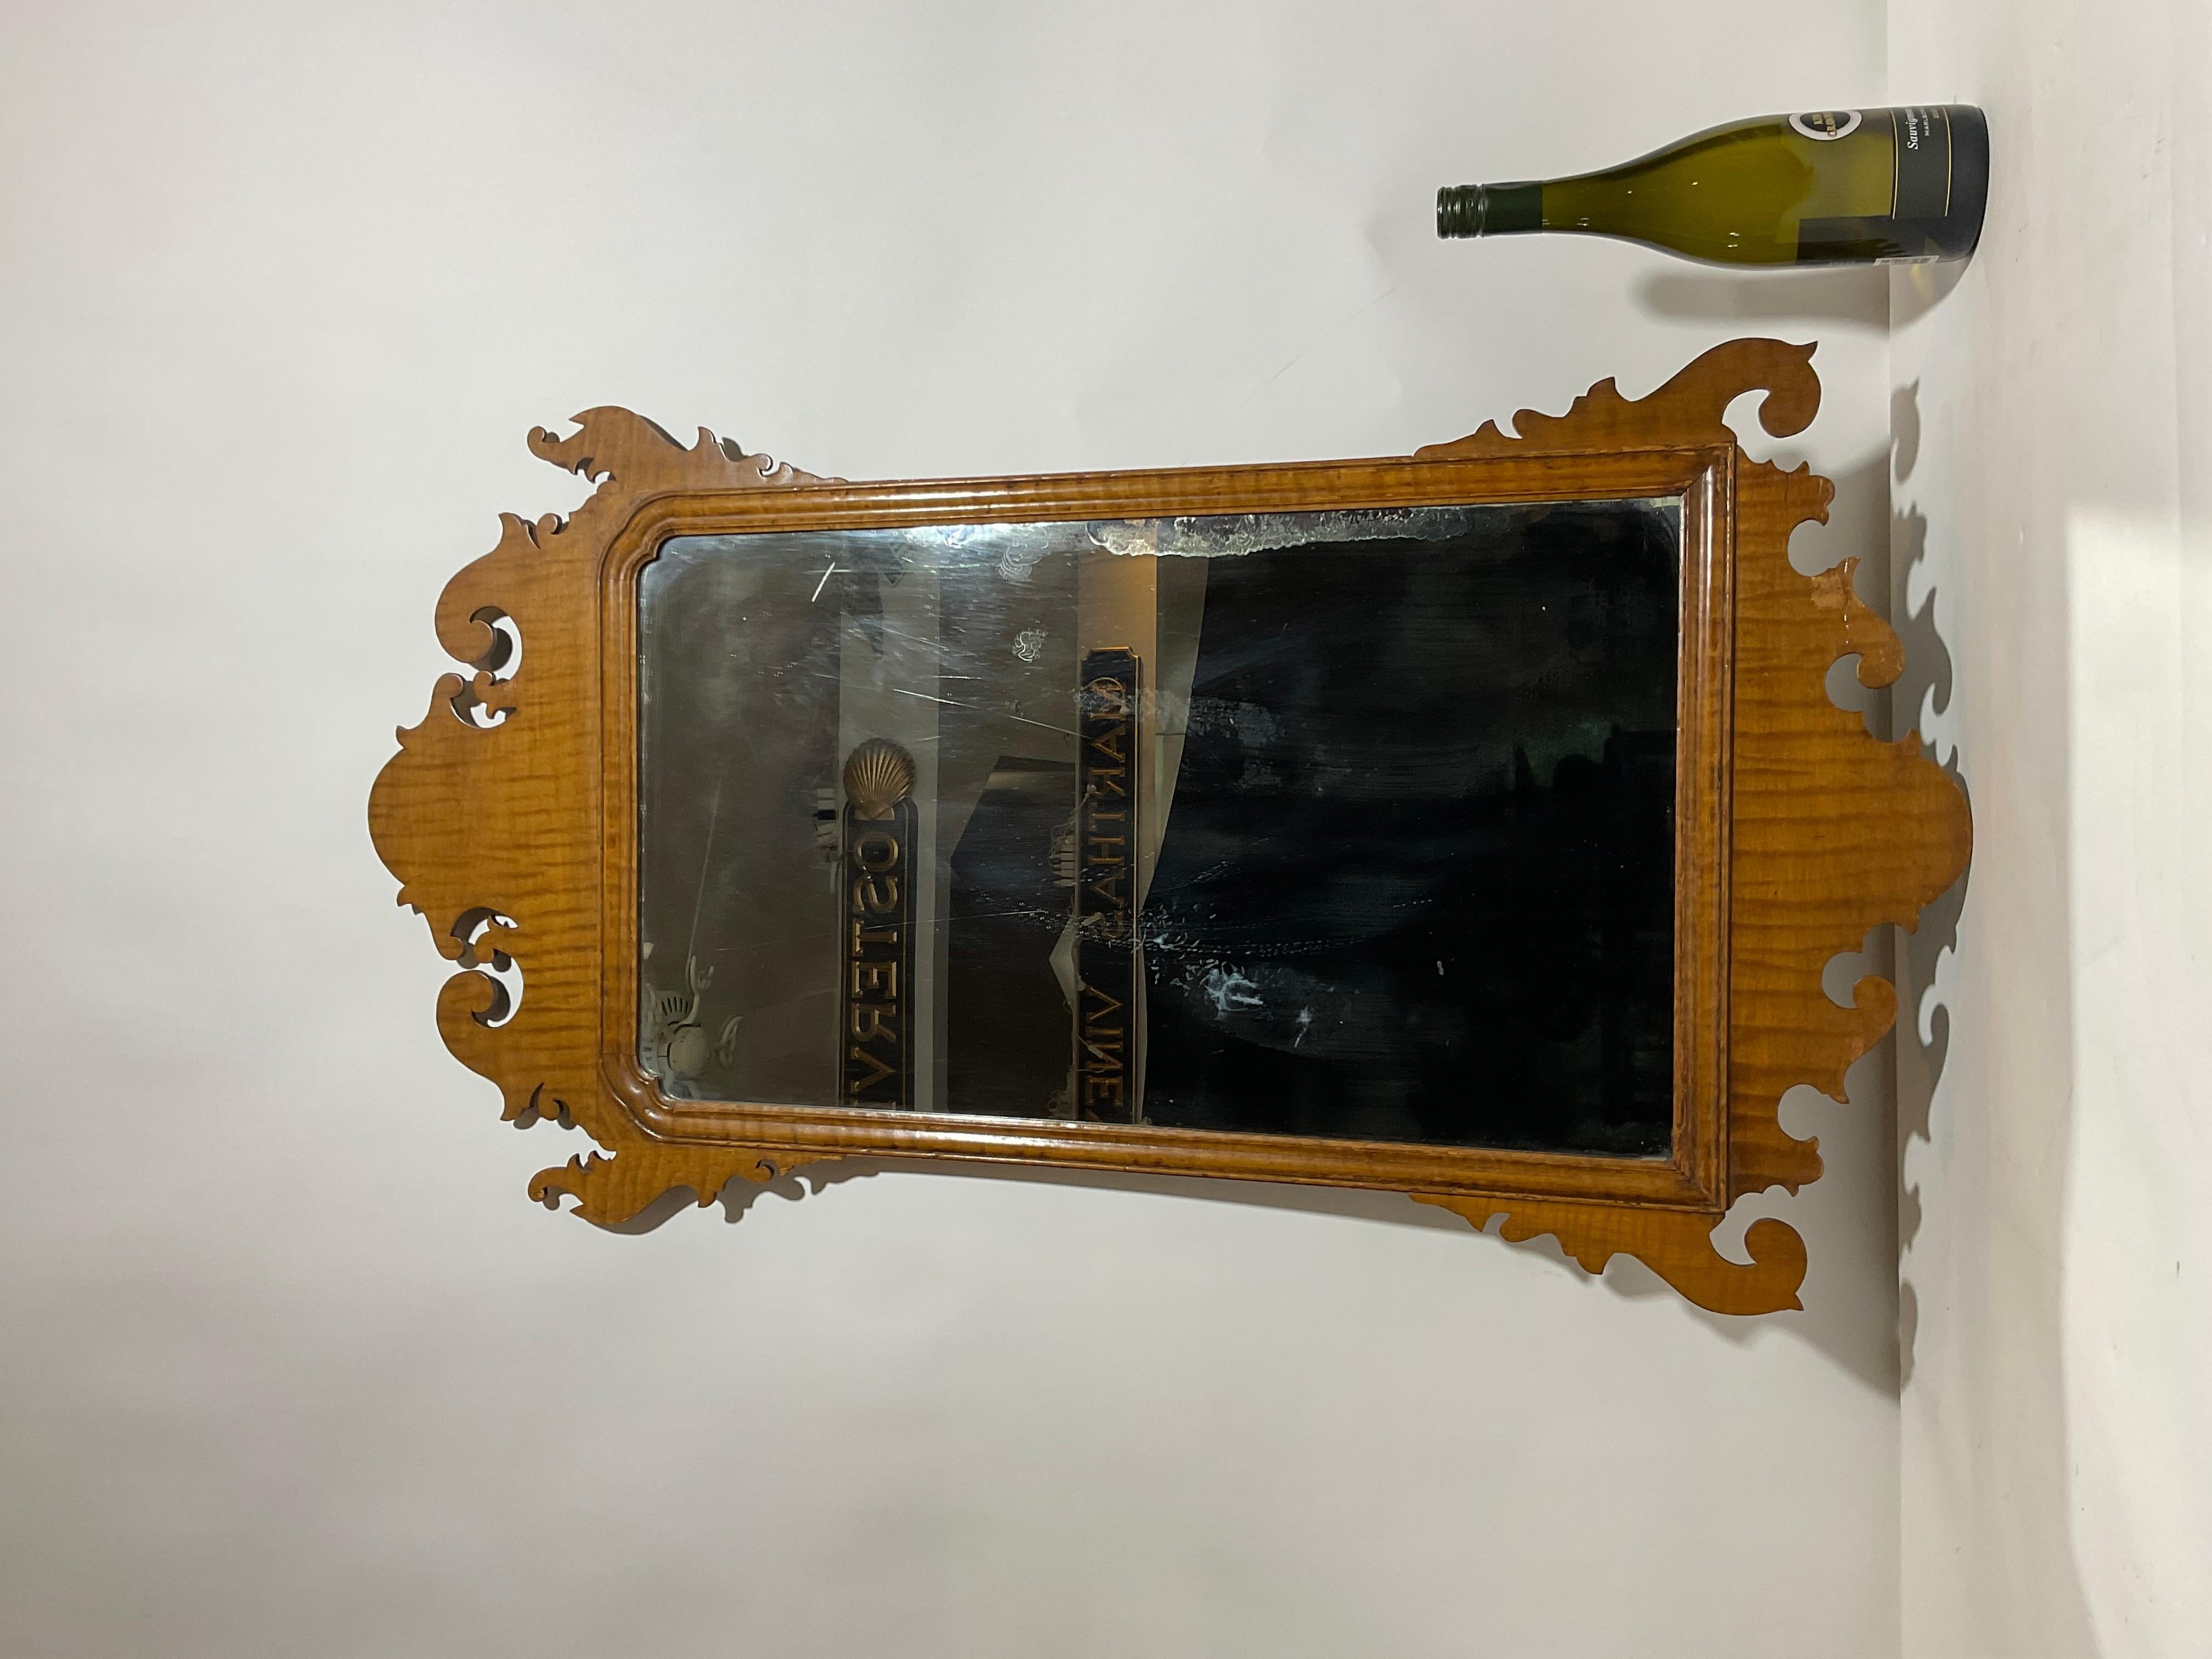 Antiker Spiegel aus Tigerahorn. Sehr dekorativ, aber nicht perfekt. Einige Furnierschäden, einige Flecken auf dem Spiegel.

Gewicht: 8 lbs
Gesamtabmessungen: 42 